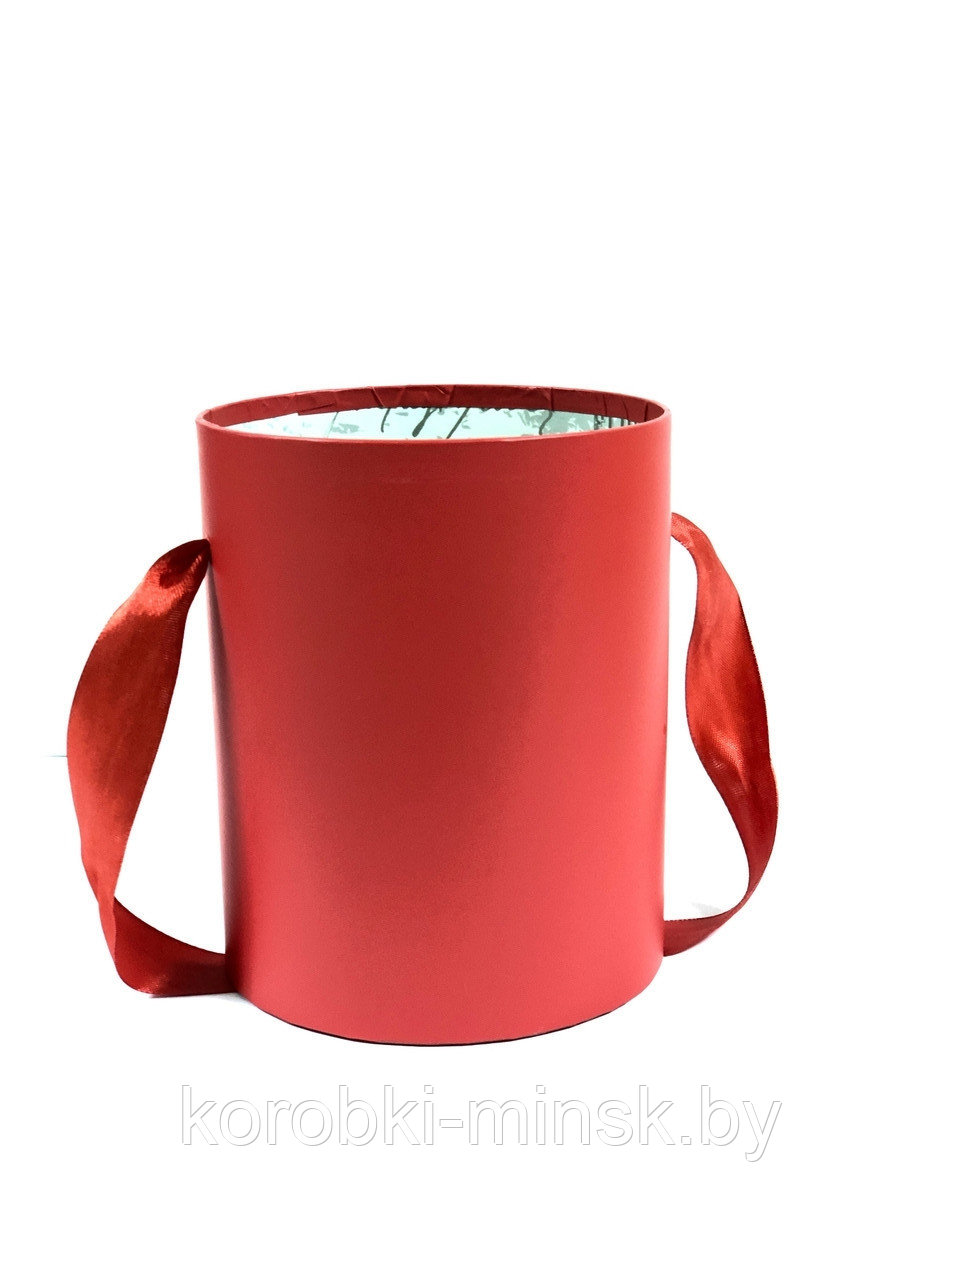 Шляпная коробка эконом вариант красная диаметр 12 см, высота 15 см, без крышки.